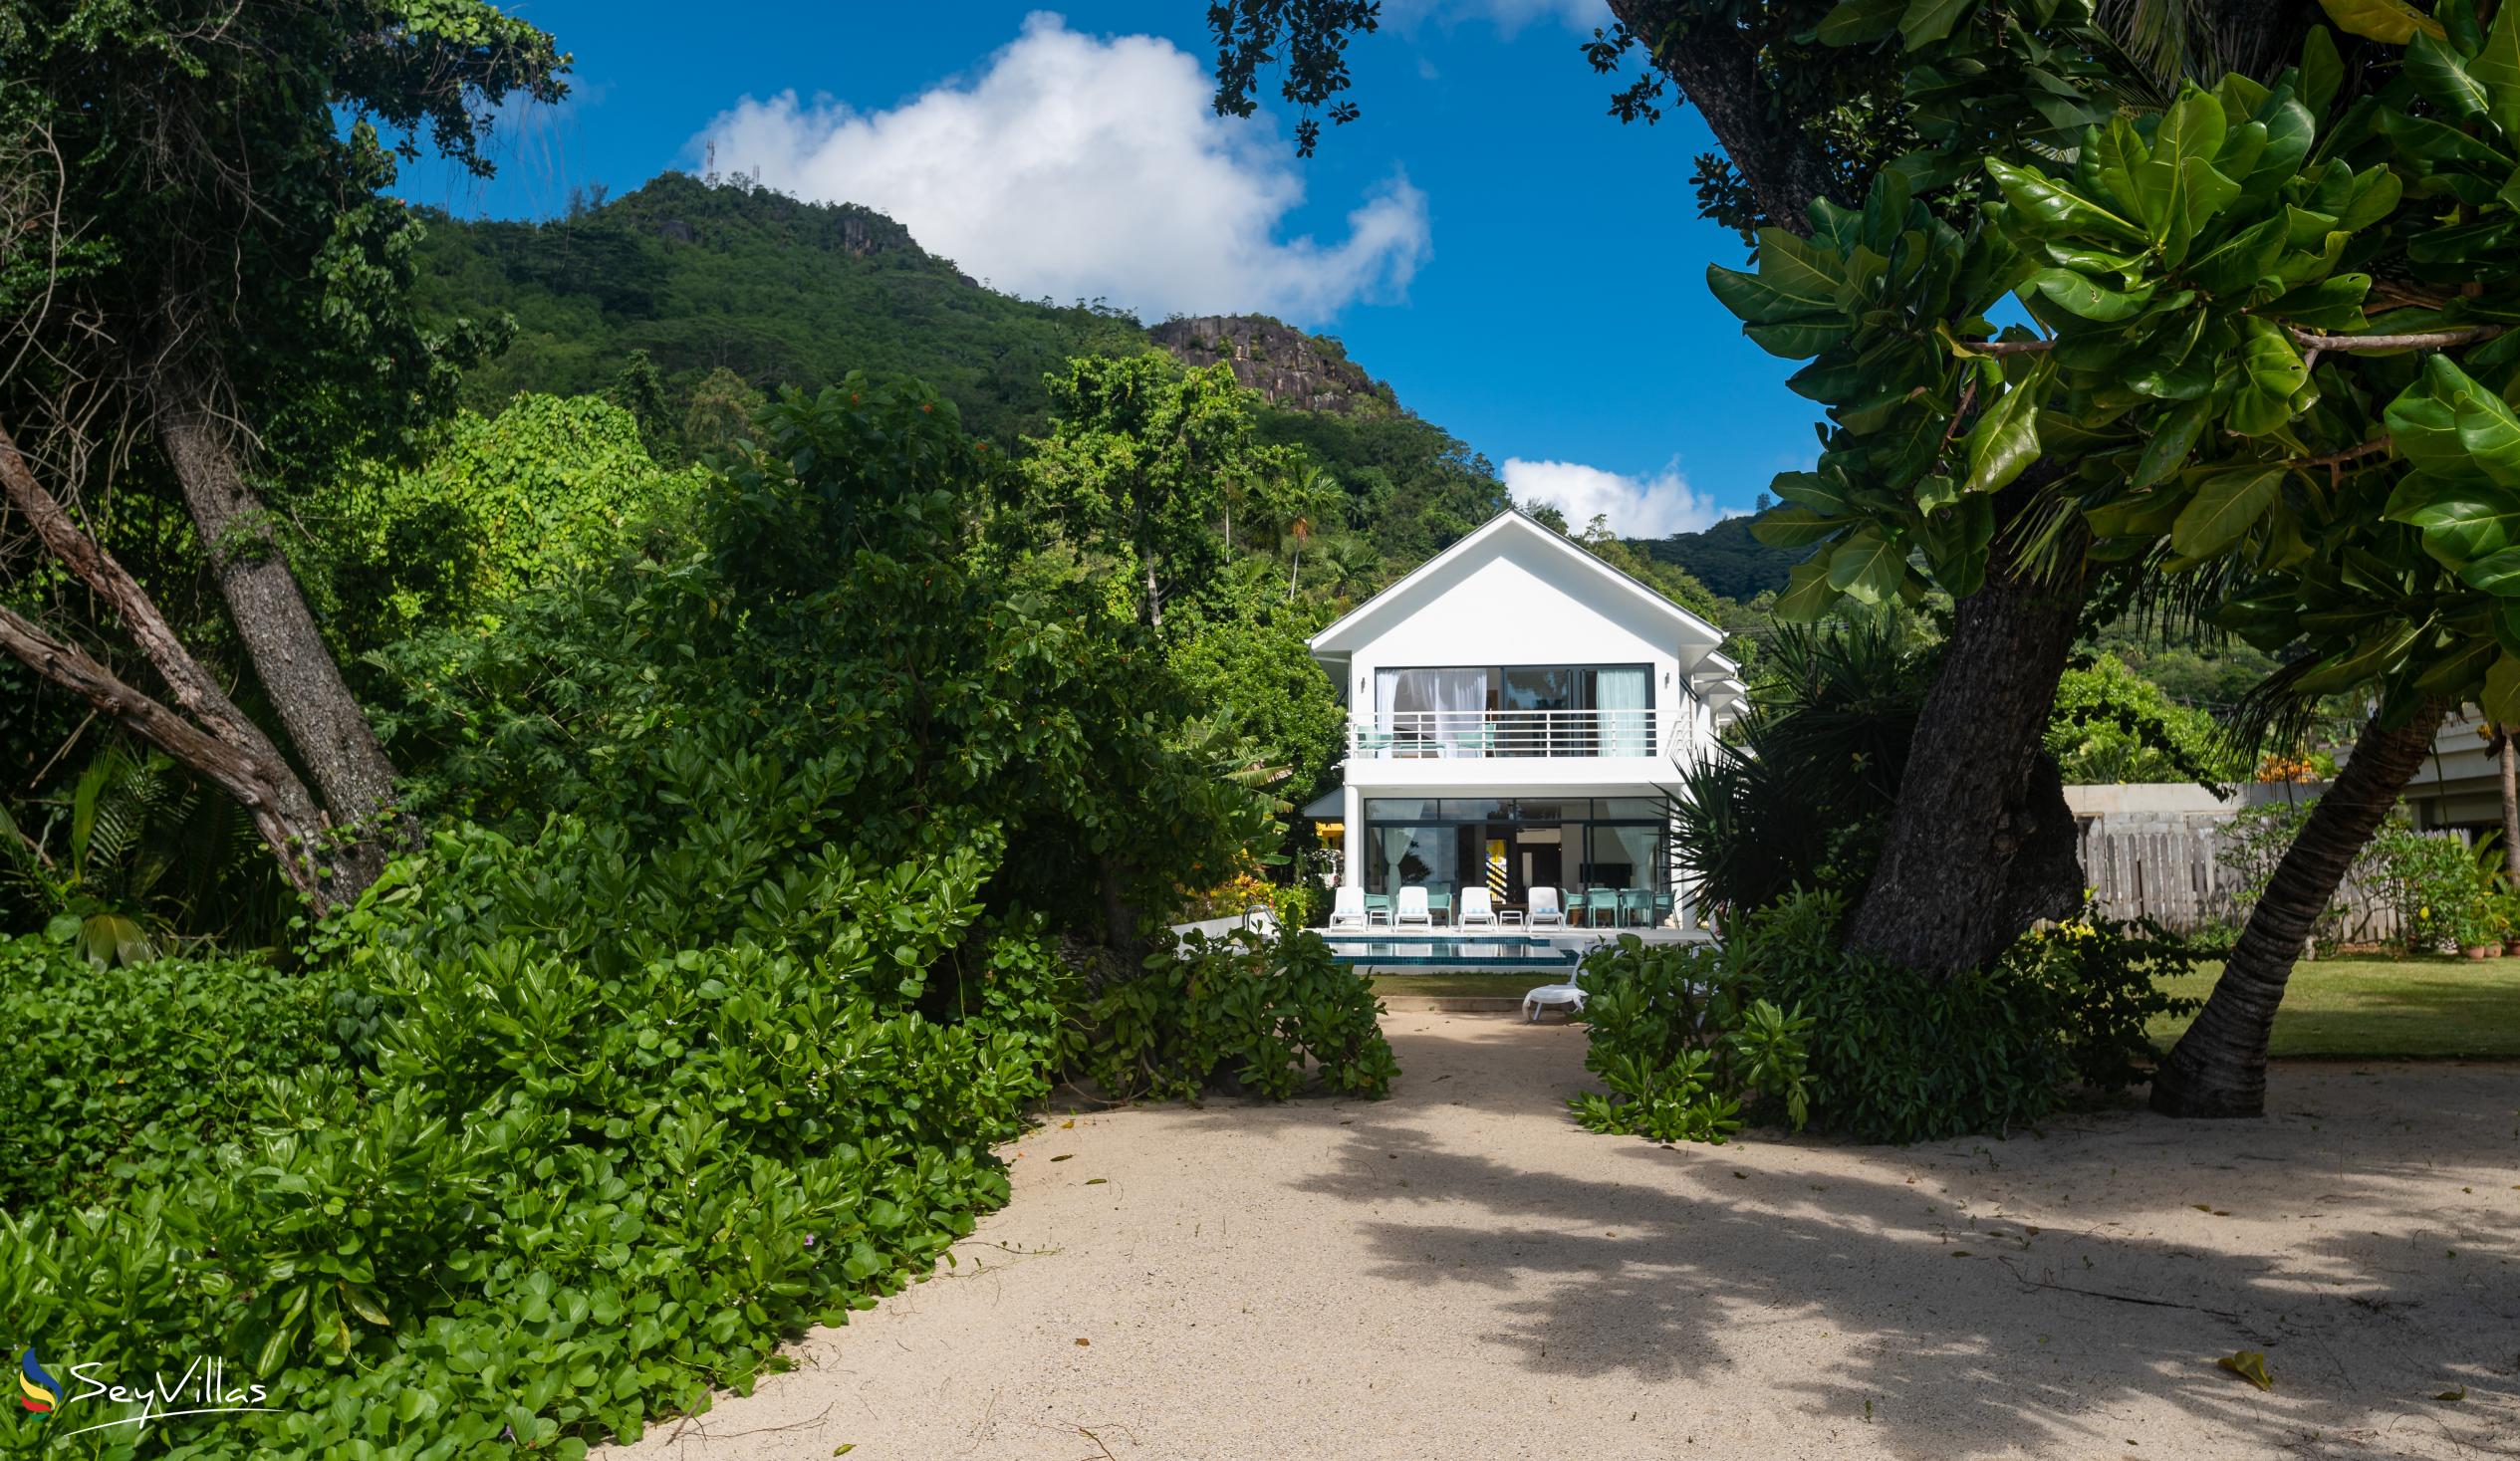 Foto 9: Lyla Beach Villa - Aussenbereich - Mahé (Seychellen)